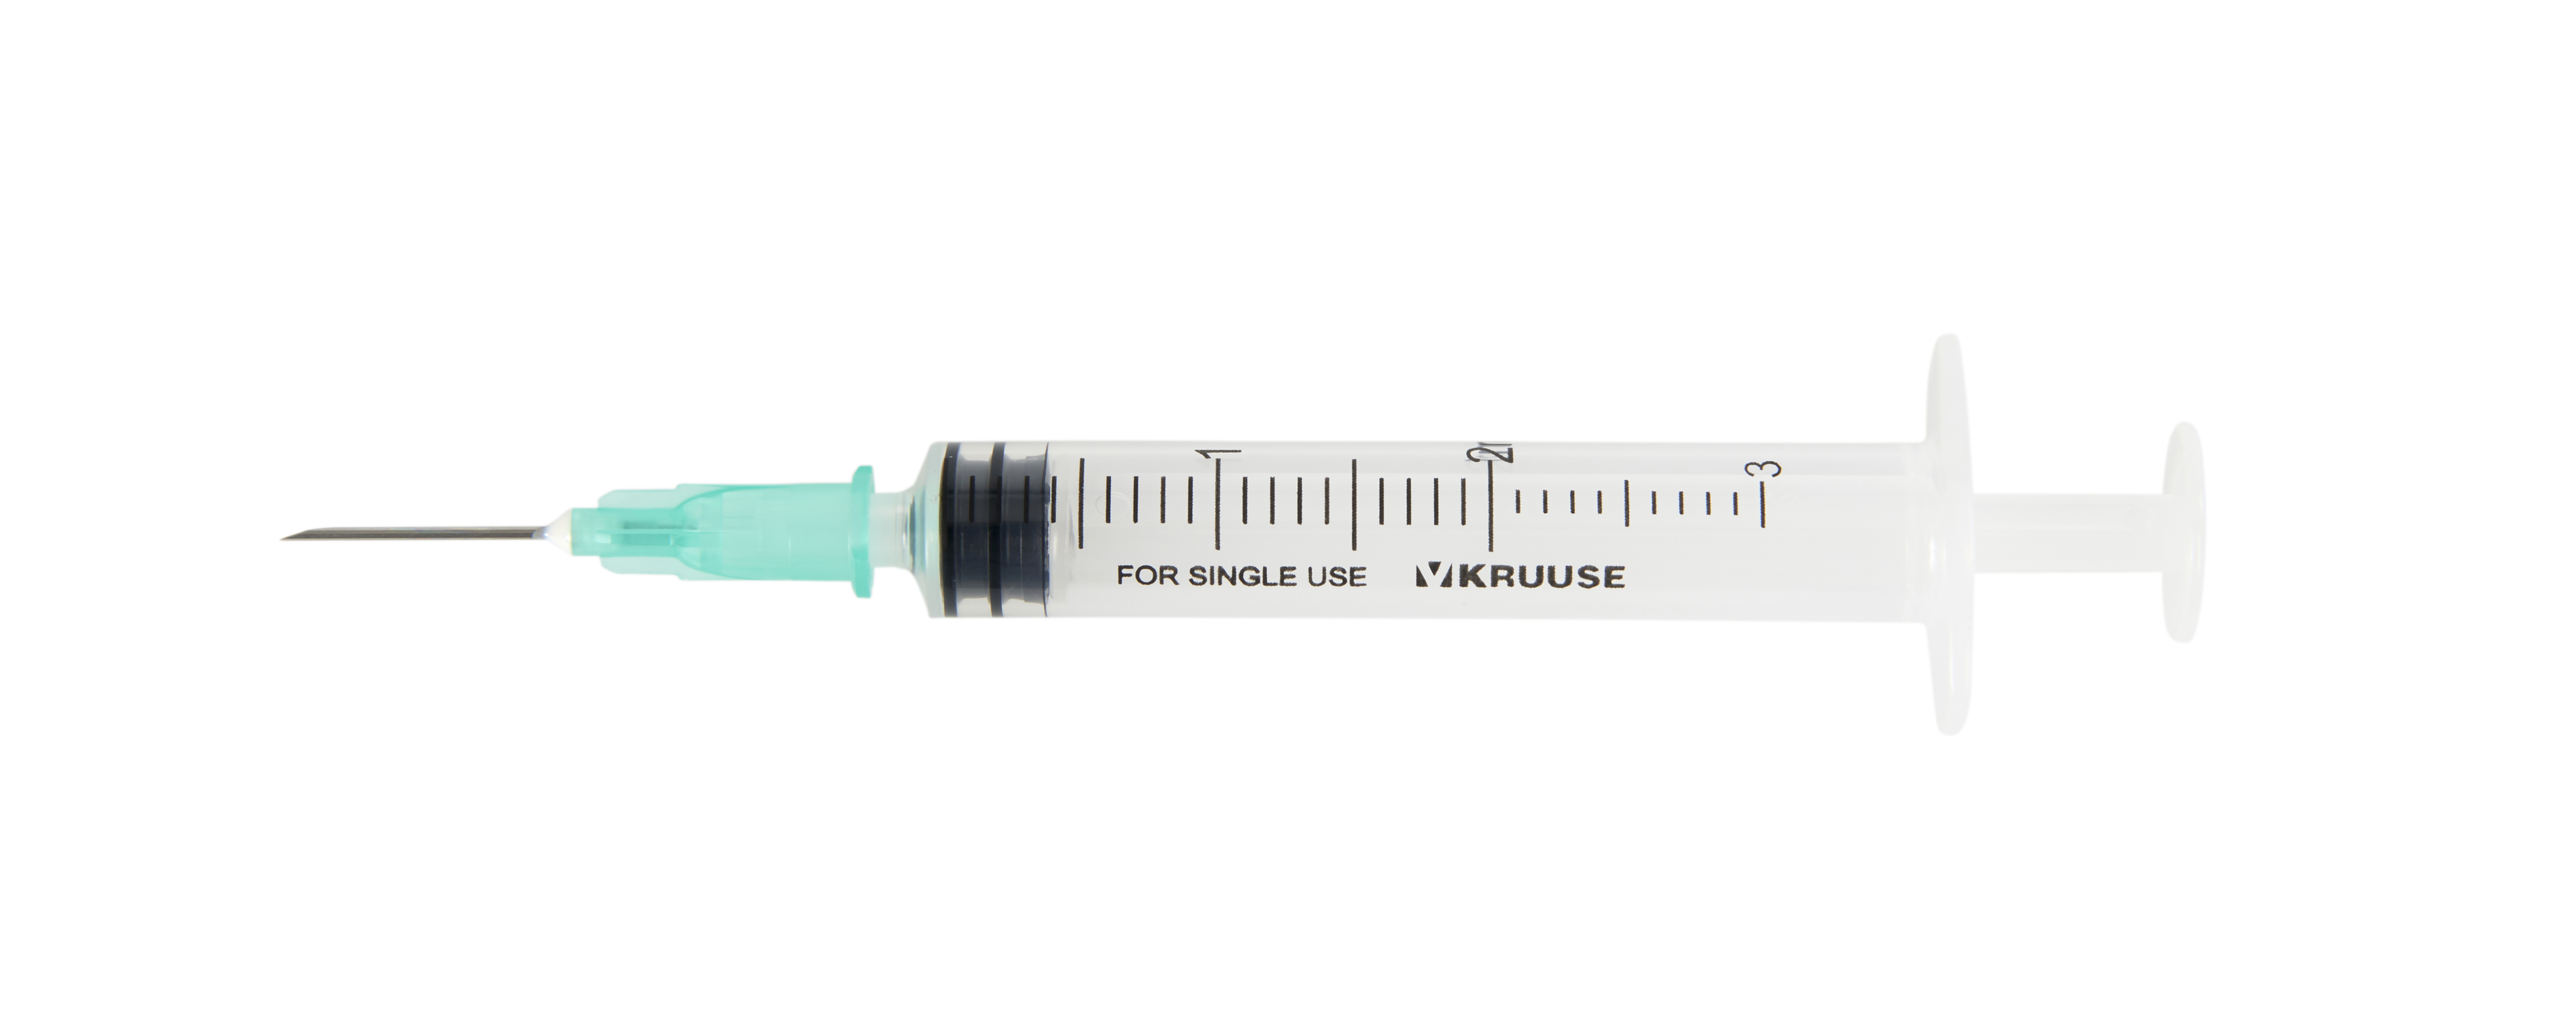 KRUUSE disp. syringe with needle, 3-comp., 2->3 ml luer slip, 21G x 5/8, 100/pk